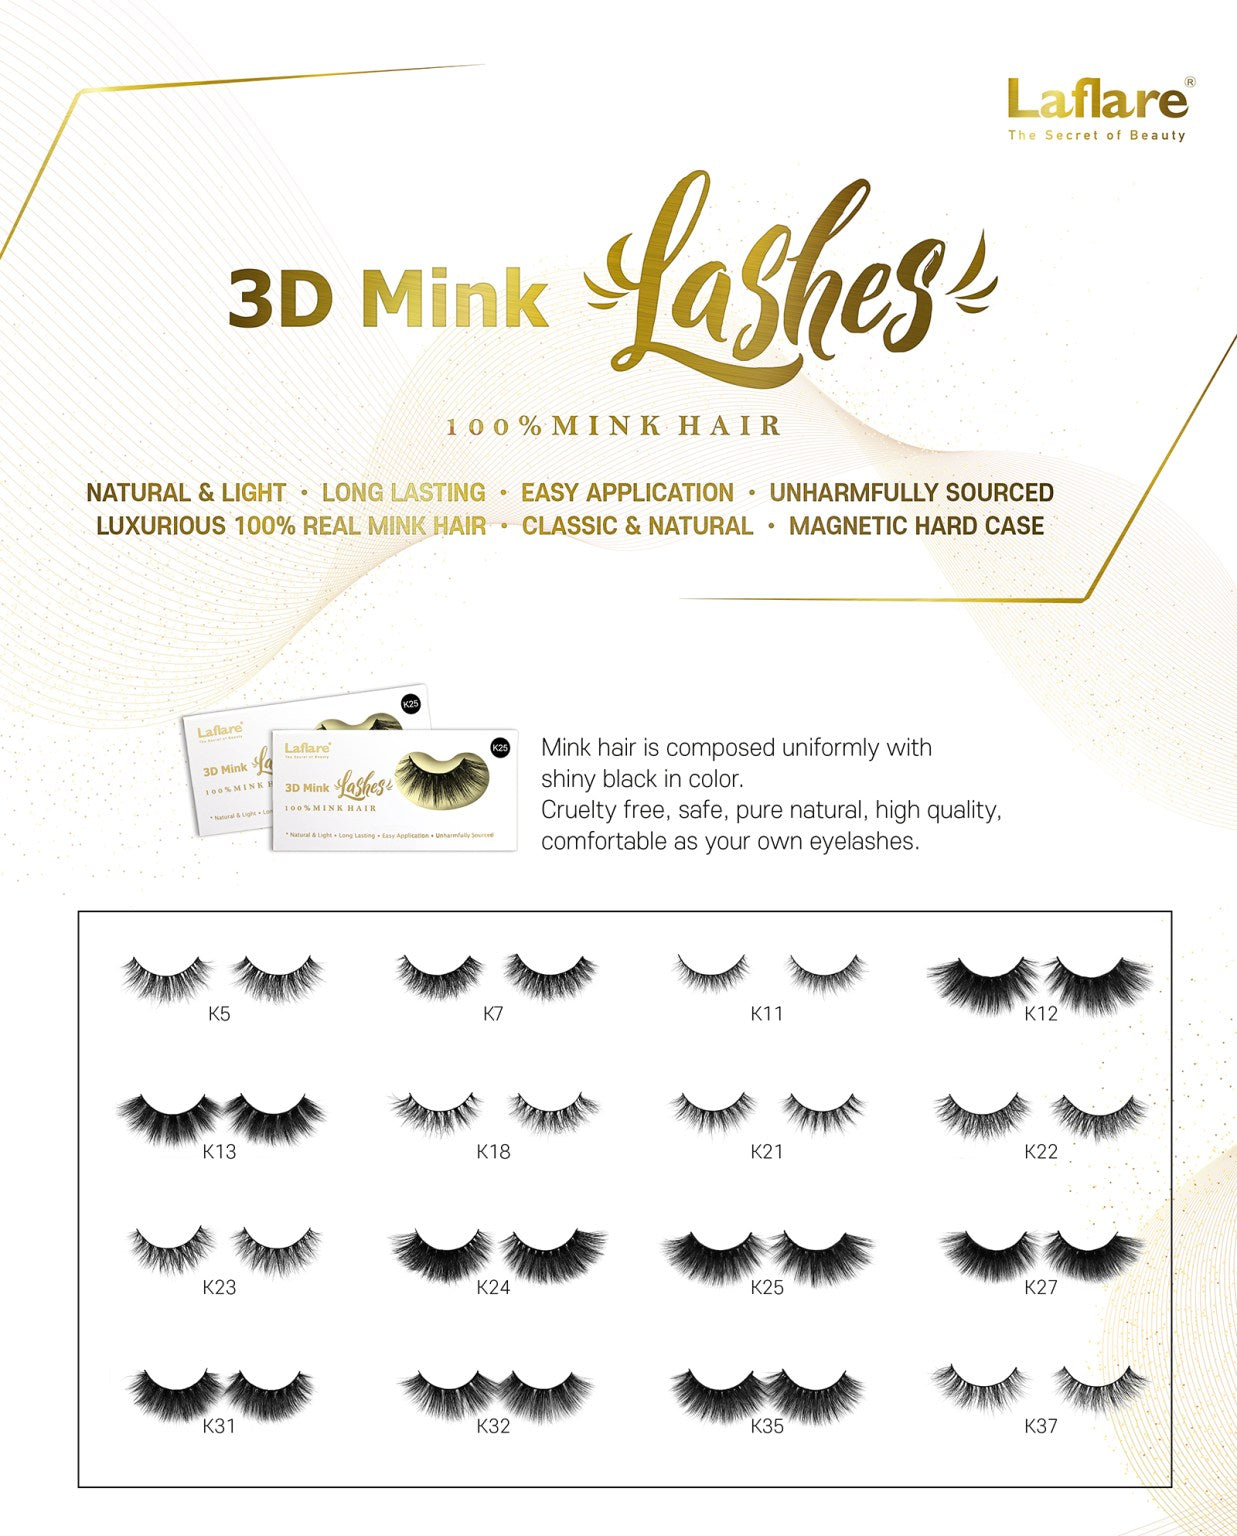 LAFLARE 3D FAUX MINK LASHES - K37